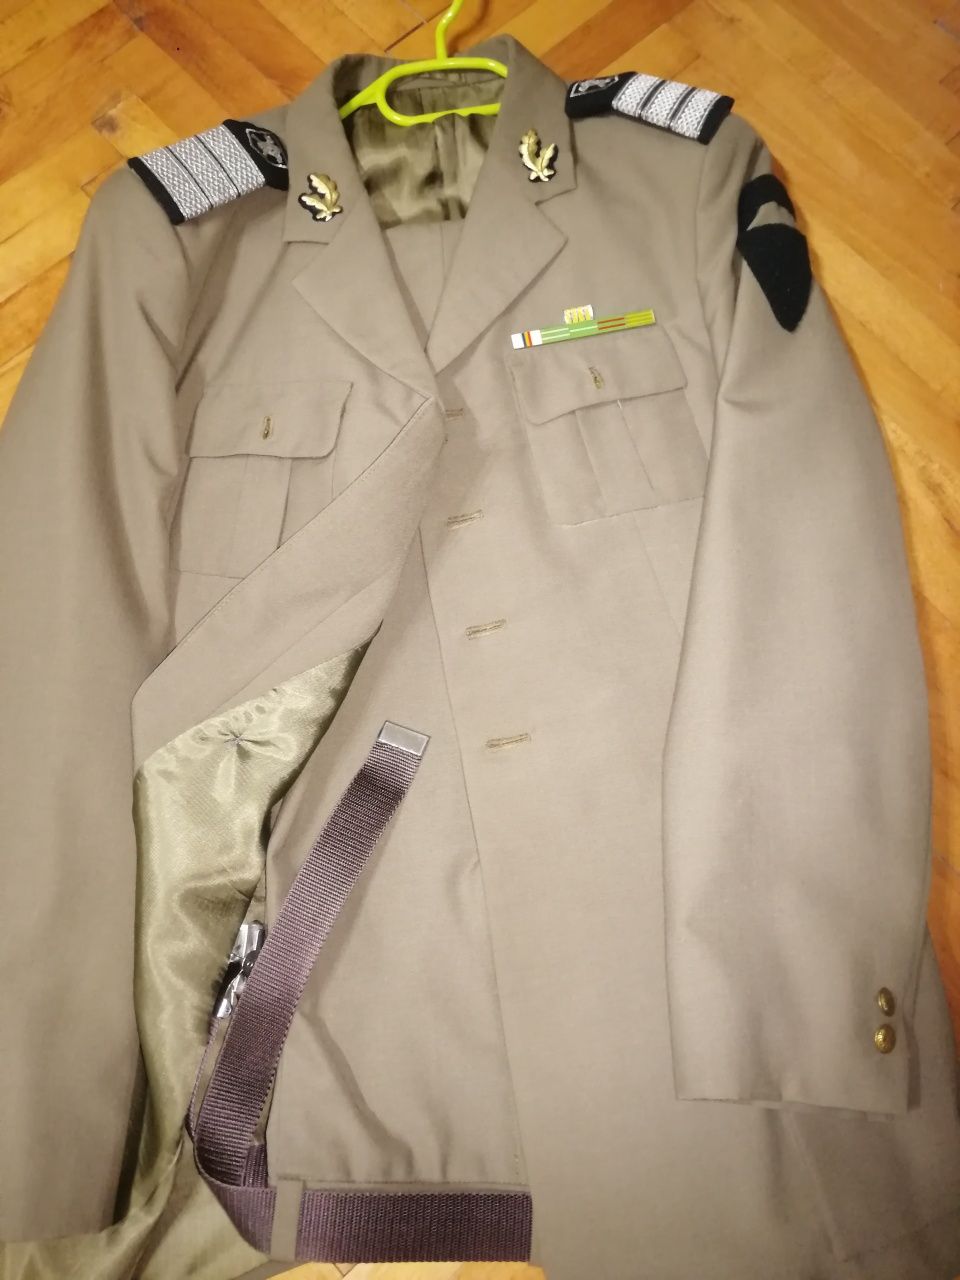 Costume și accesorii militare